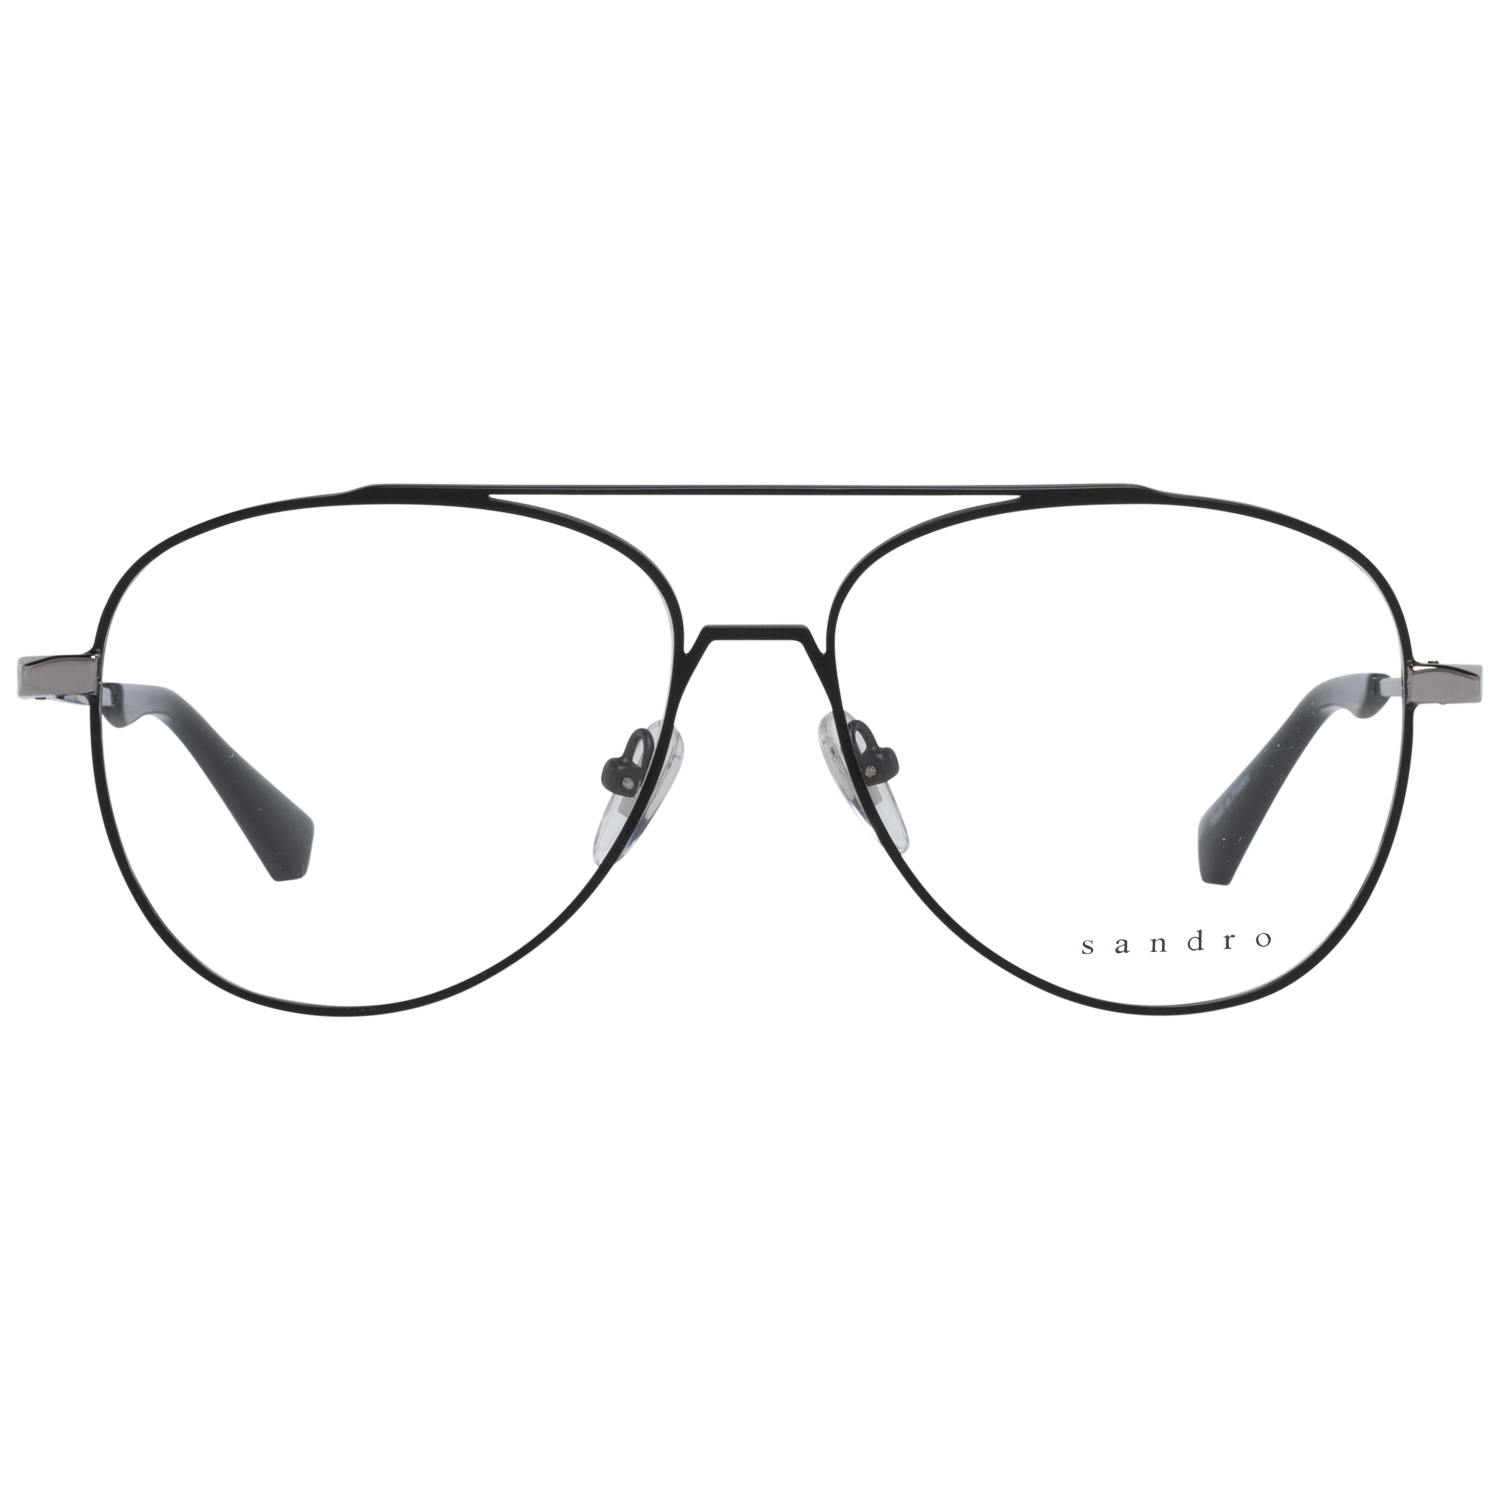 Sandro Frames Sandro Optical Frame SD3001 108 55 Eyeglasses Eyewear UK USA Australia 